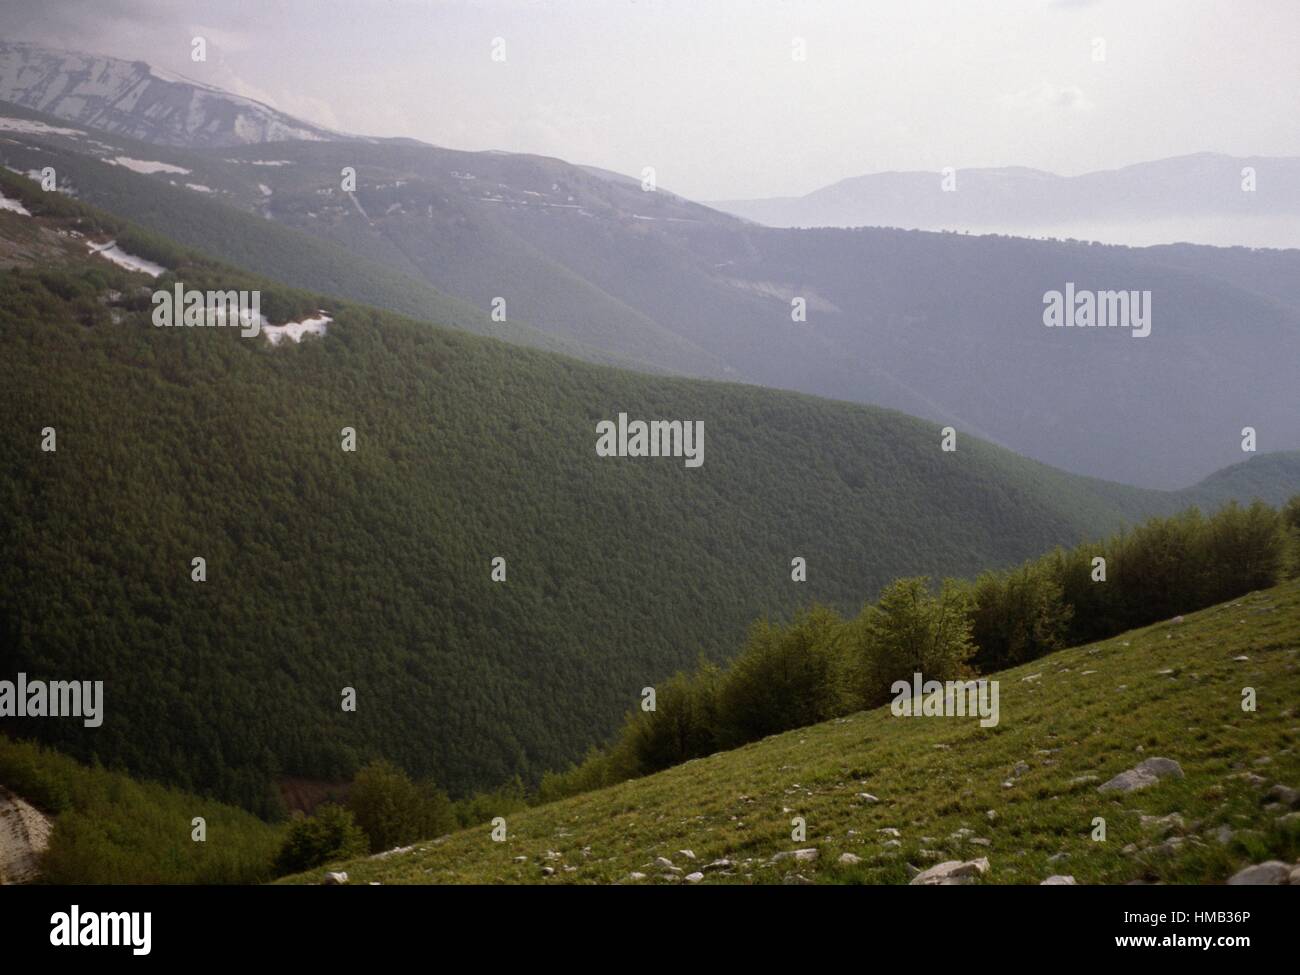 Boscose pendici del massiccio della Majella, cappucci parzialmente coperto di neve in background, il Parco Nazionale della Majella, Abruzzo, Foto Stock